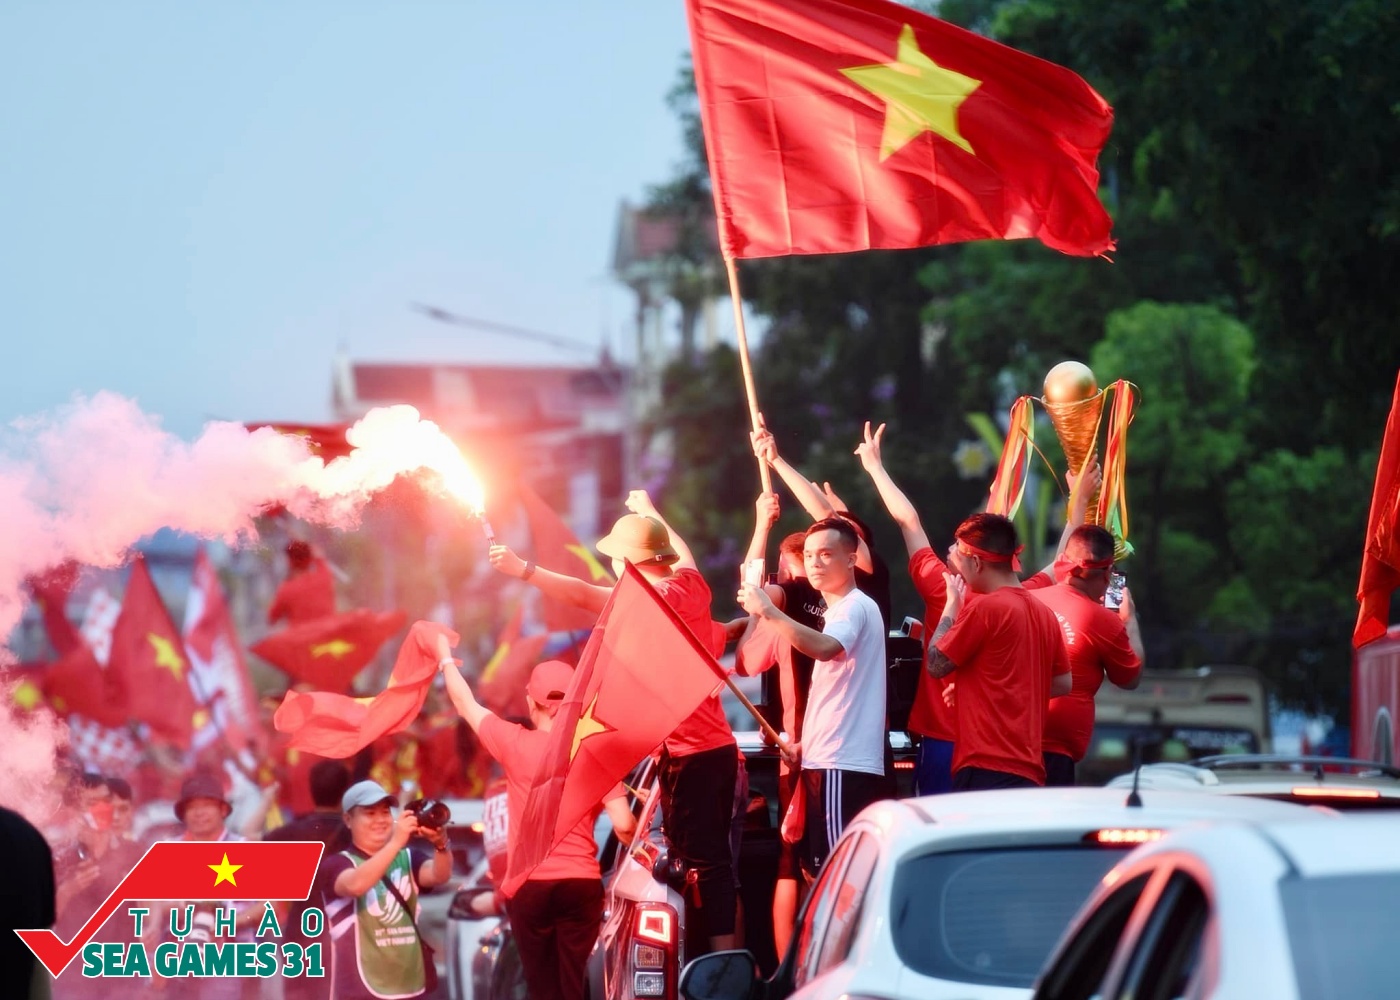 U23 Việt Nam - U23 Malaysia: Trận đấu giữa đội tuyển U23 Việt Nam và U23 Malaysia luôn thu hút được sự quan tâm của người hâm mộ cả hai quốc gia. Bức ảnh về trận đấu này không chỉ thể hiện sự cạnh tranh quyết liệt mà còn là niềm đam mê bóng đá của các cầu thủ và người hâm mộ. Hãy cùng xem và hòa nhịp trong không khí sôi động này.